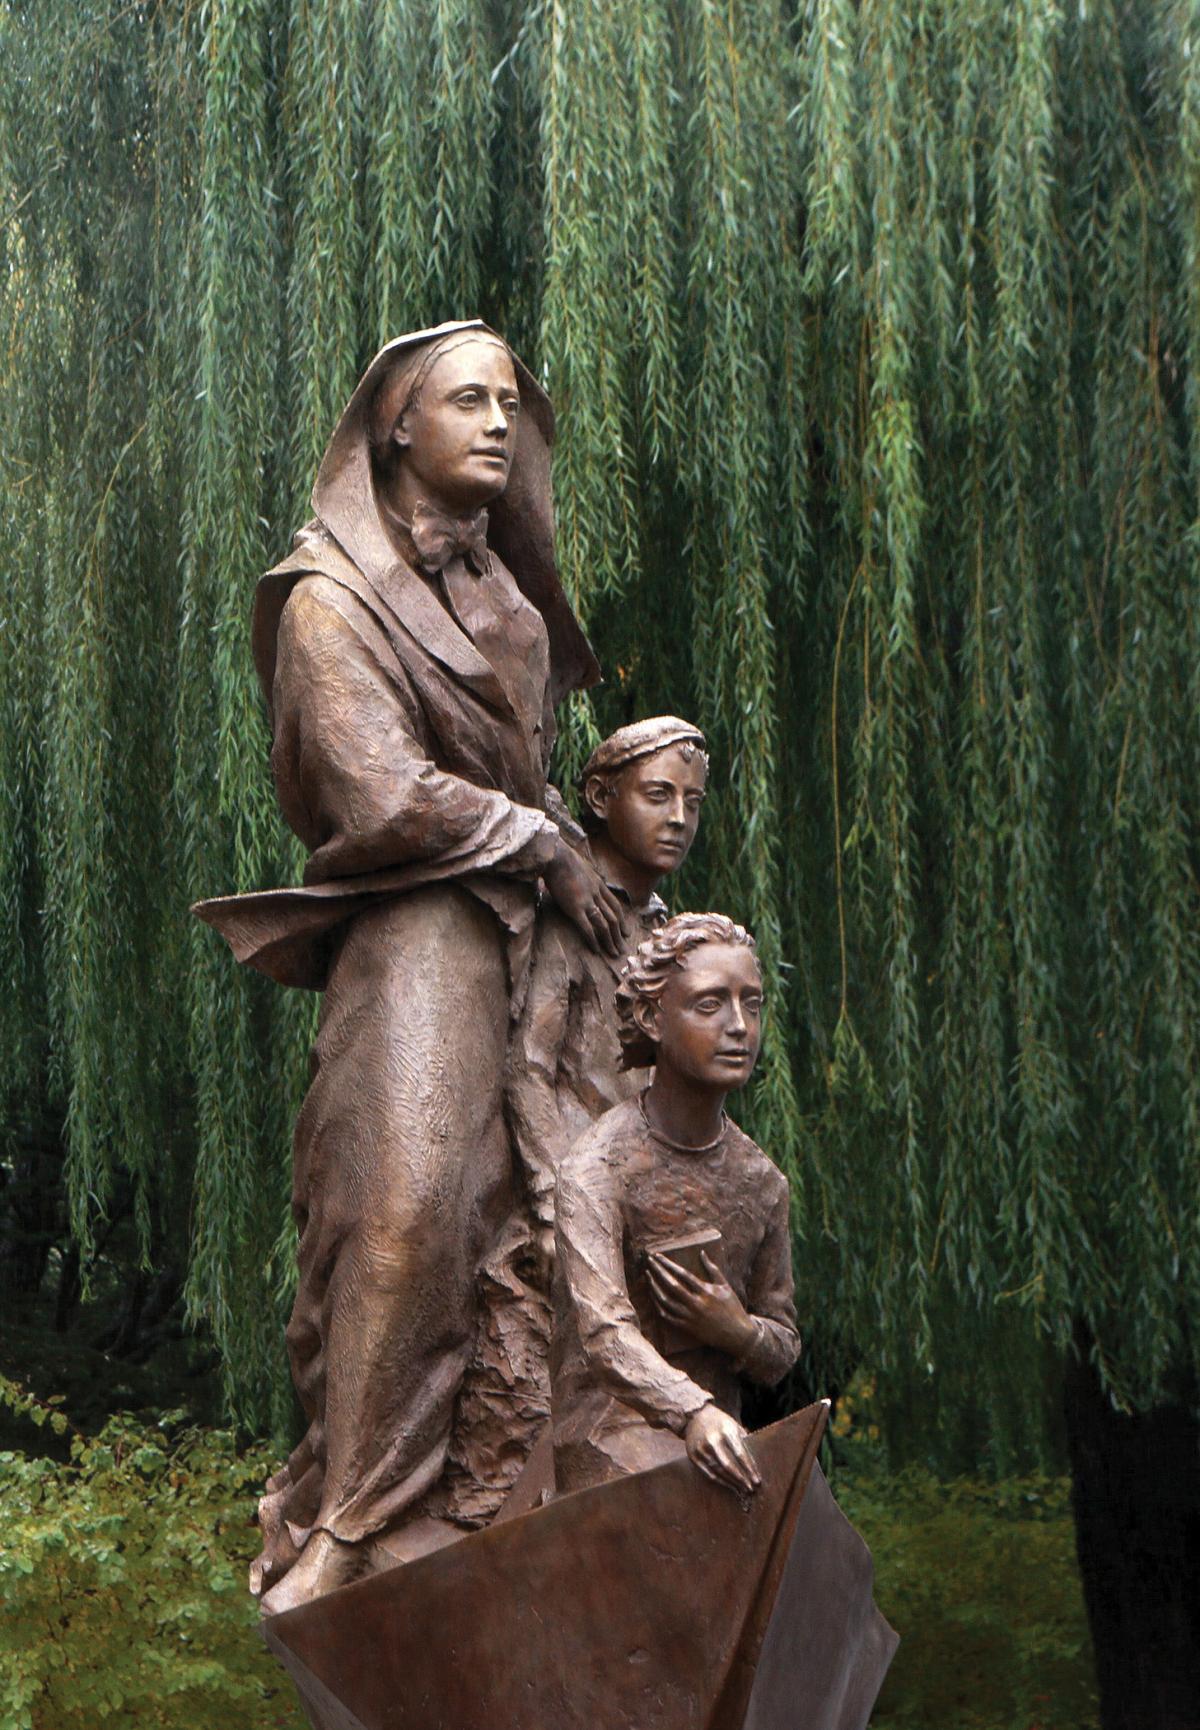 Bronze statue of Cabrini next to two children